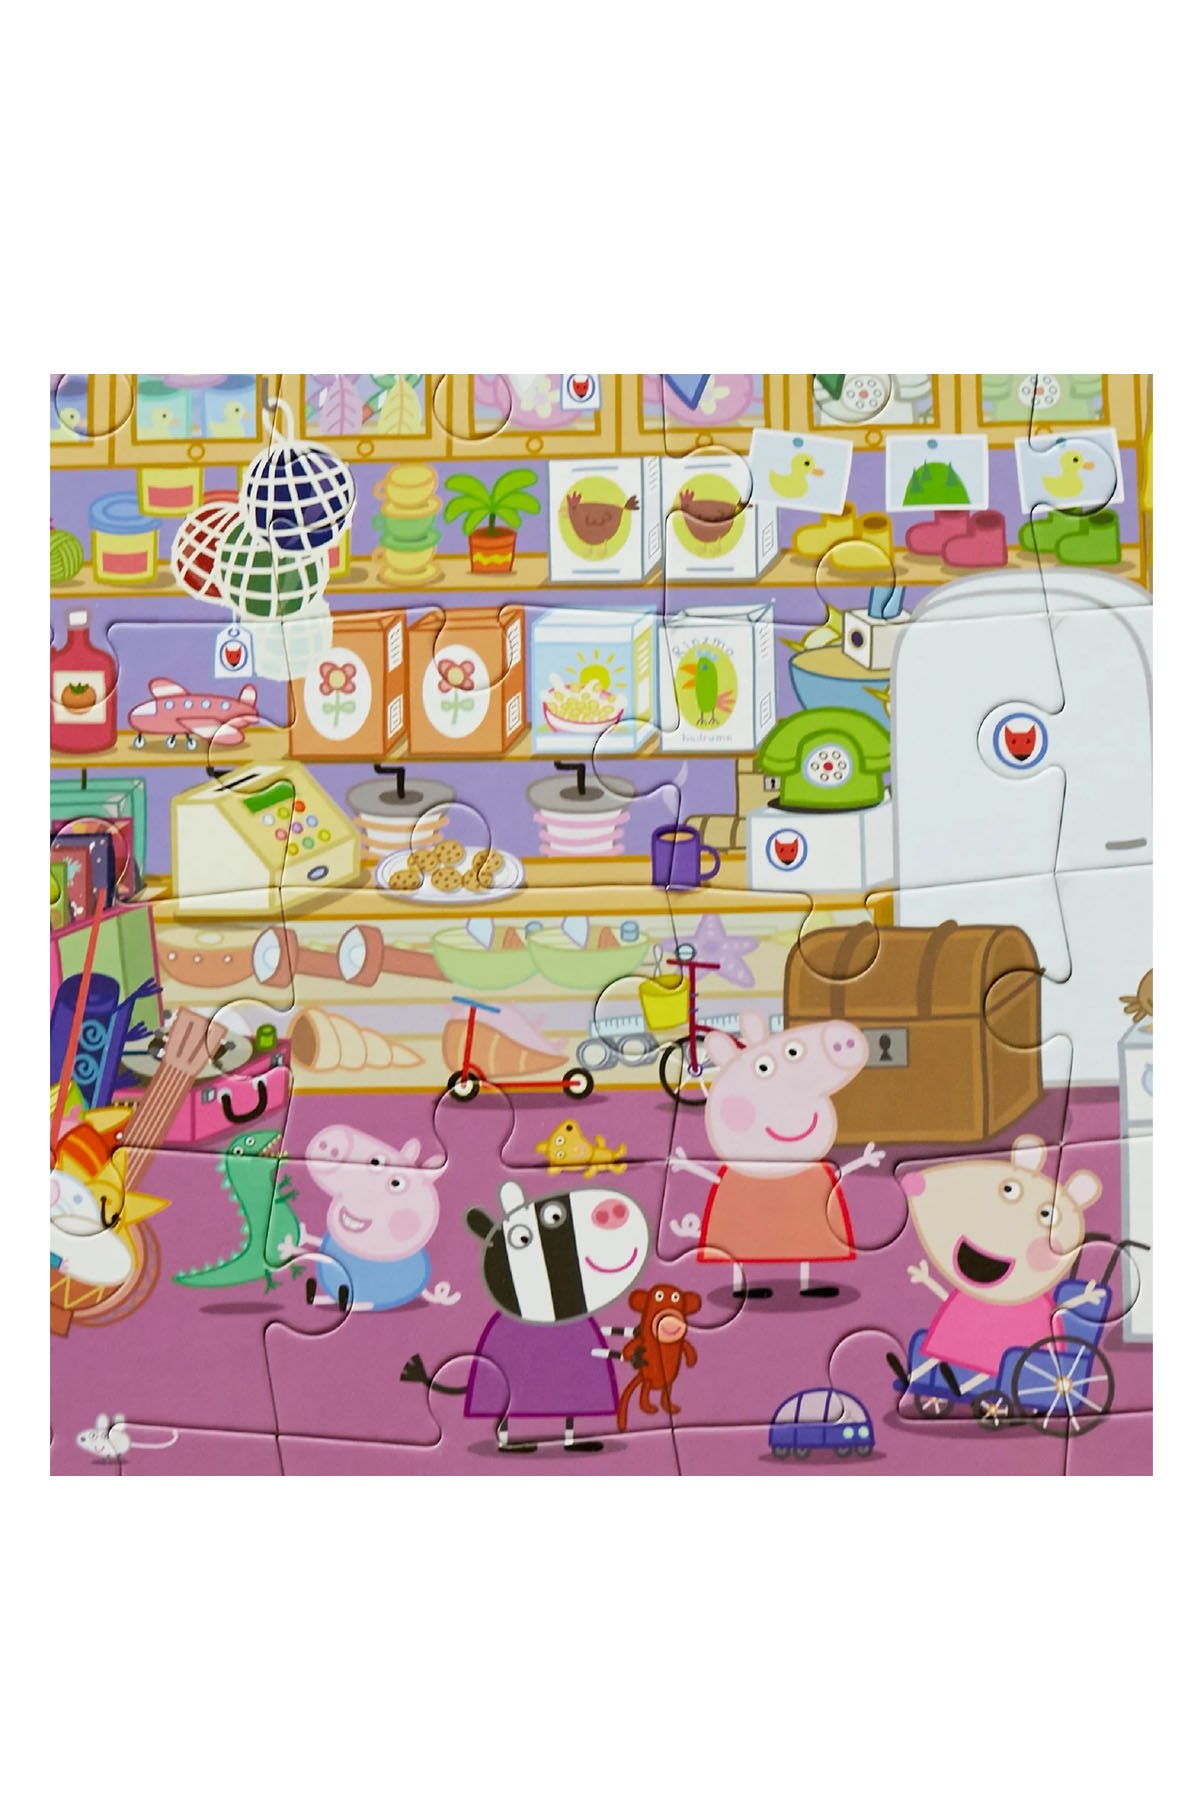 Moritoys Peppa Pig Look & Find Puzzle: Mr. Fox's Shop 36 Parça Yapboz ve Gözlem Oyunu